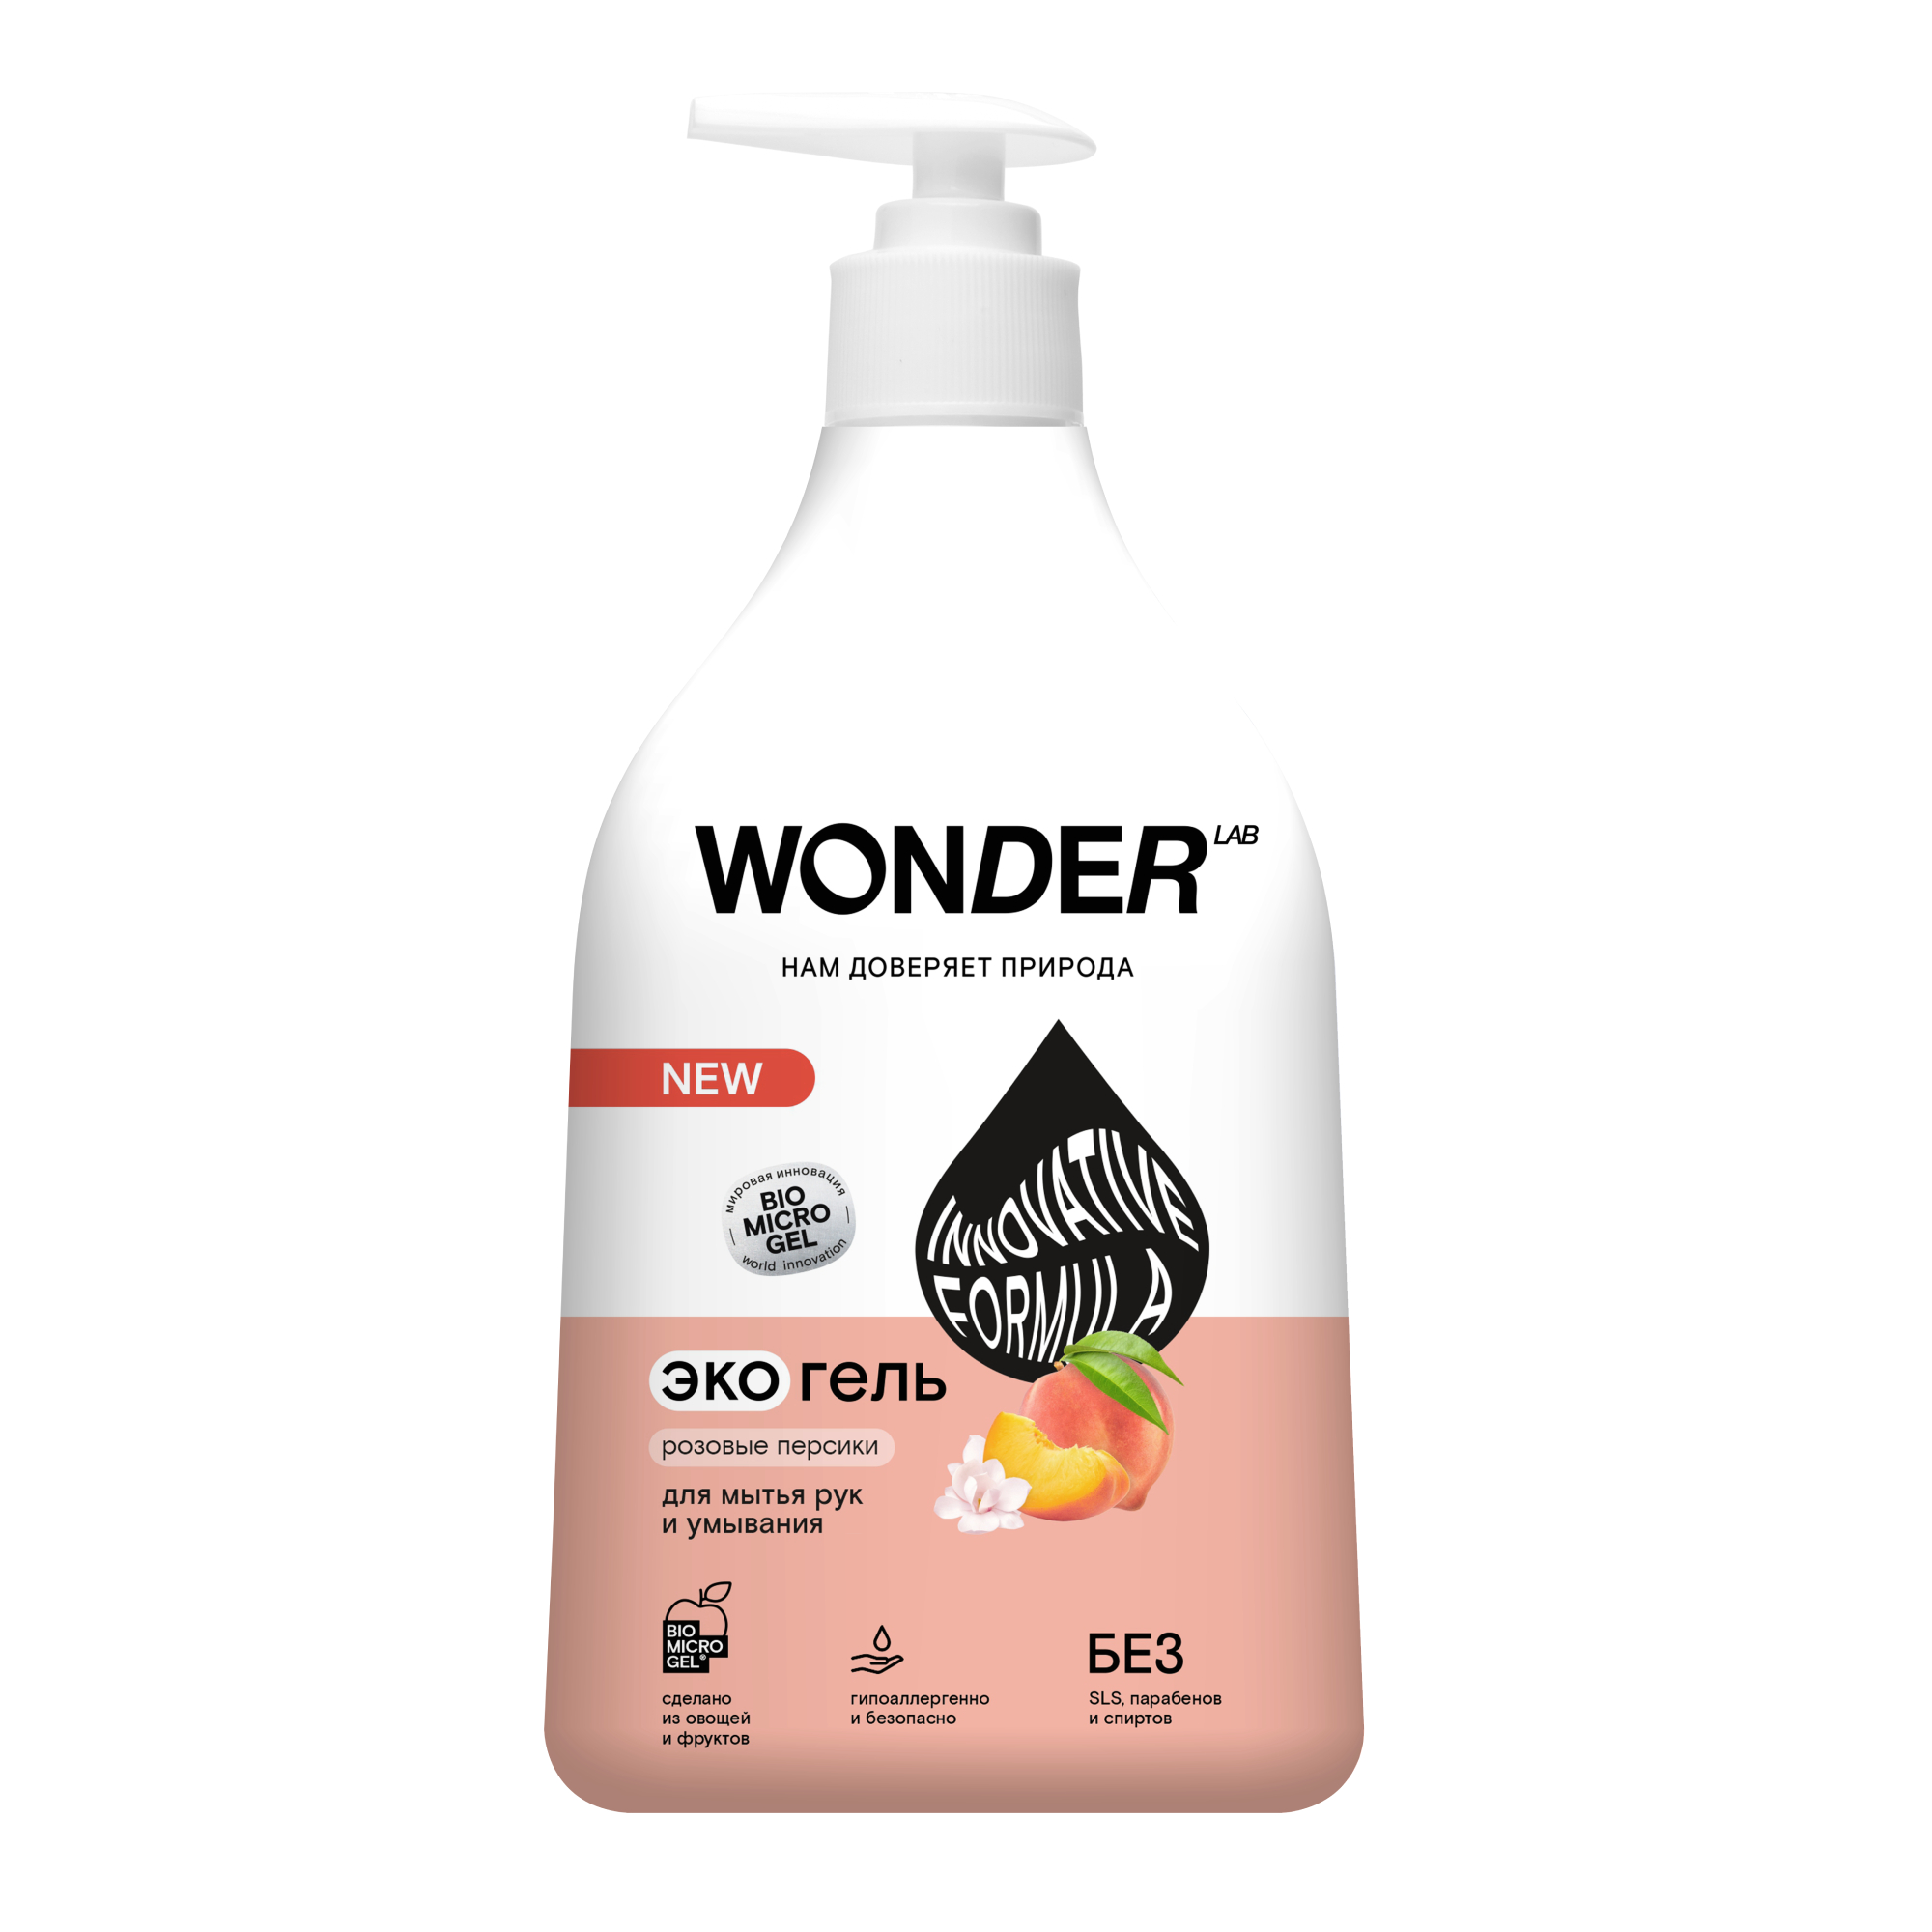 Жидкое мыло для рук и умывания WONDER LAB Розовые персики, 540 мл экогель wonder lab для мытья рук и умывания розовые персики 3 78 л